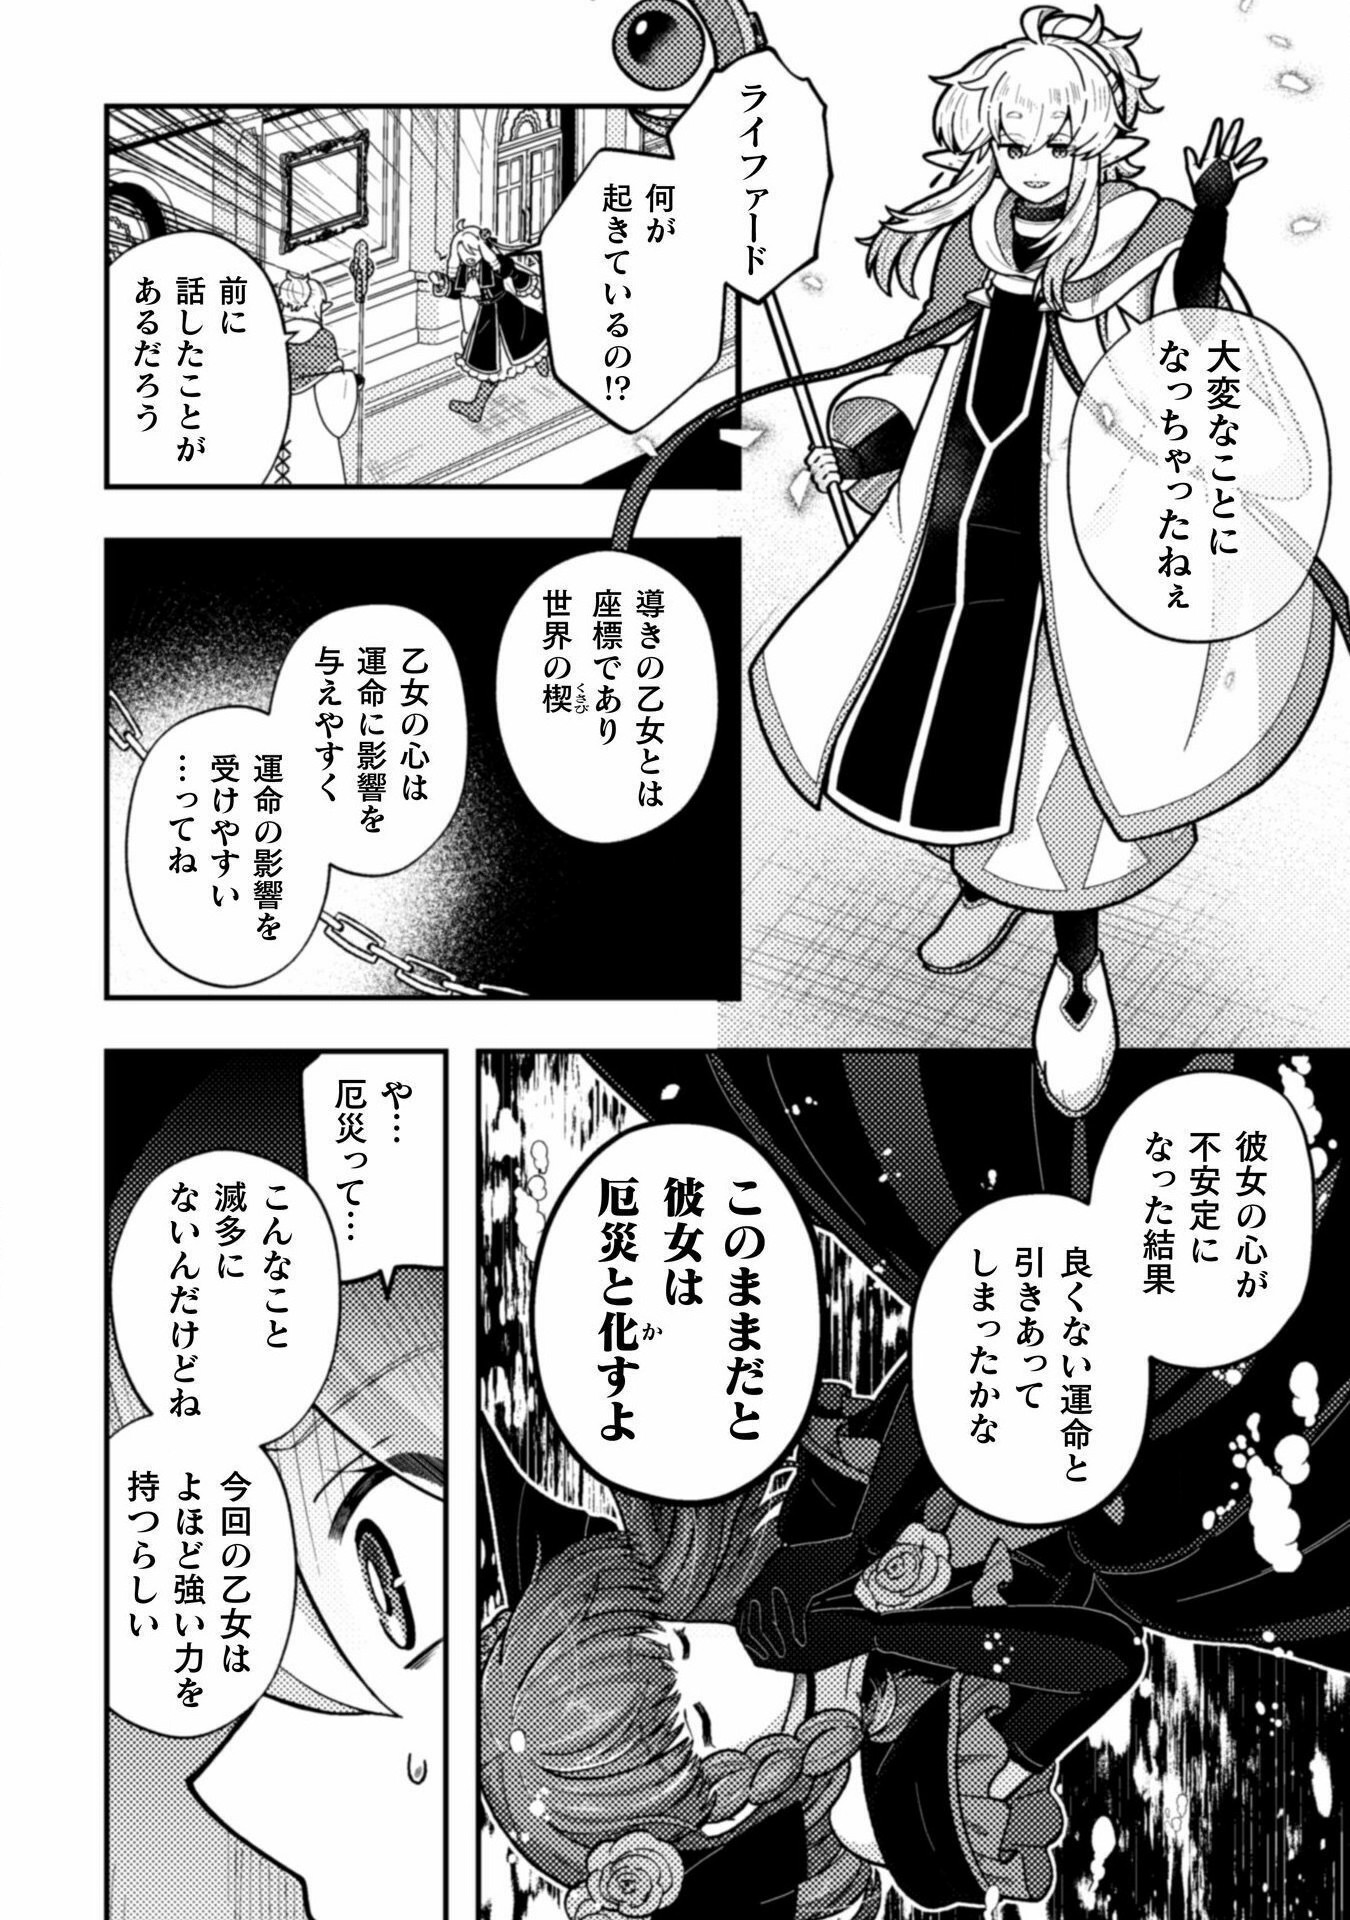 Otome Game no Akuyaku Reijou ni Tensei shitakedo Follower ga Fukyoushiteta Chisiki shikanai - Chapter 22 - Page 4